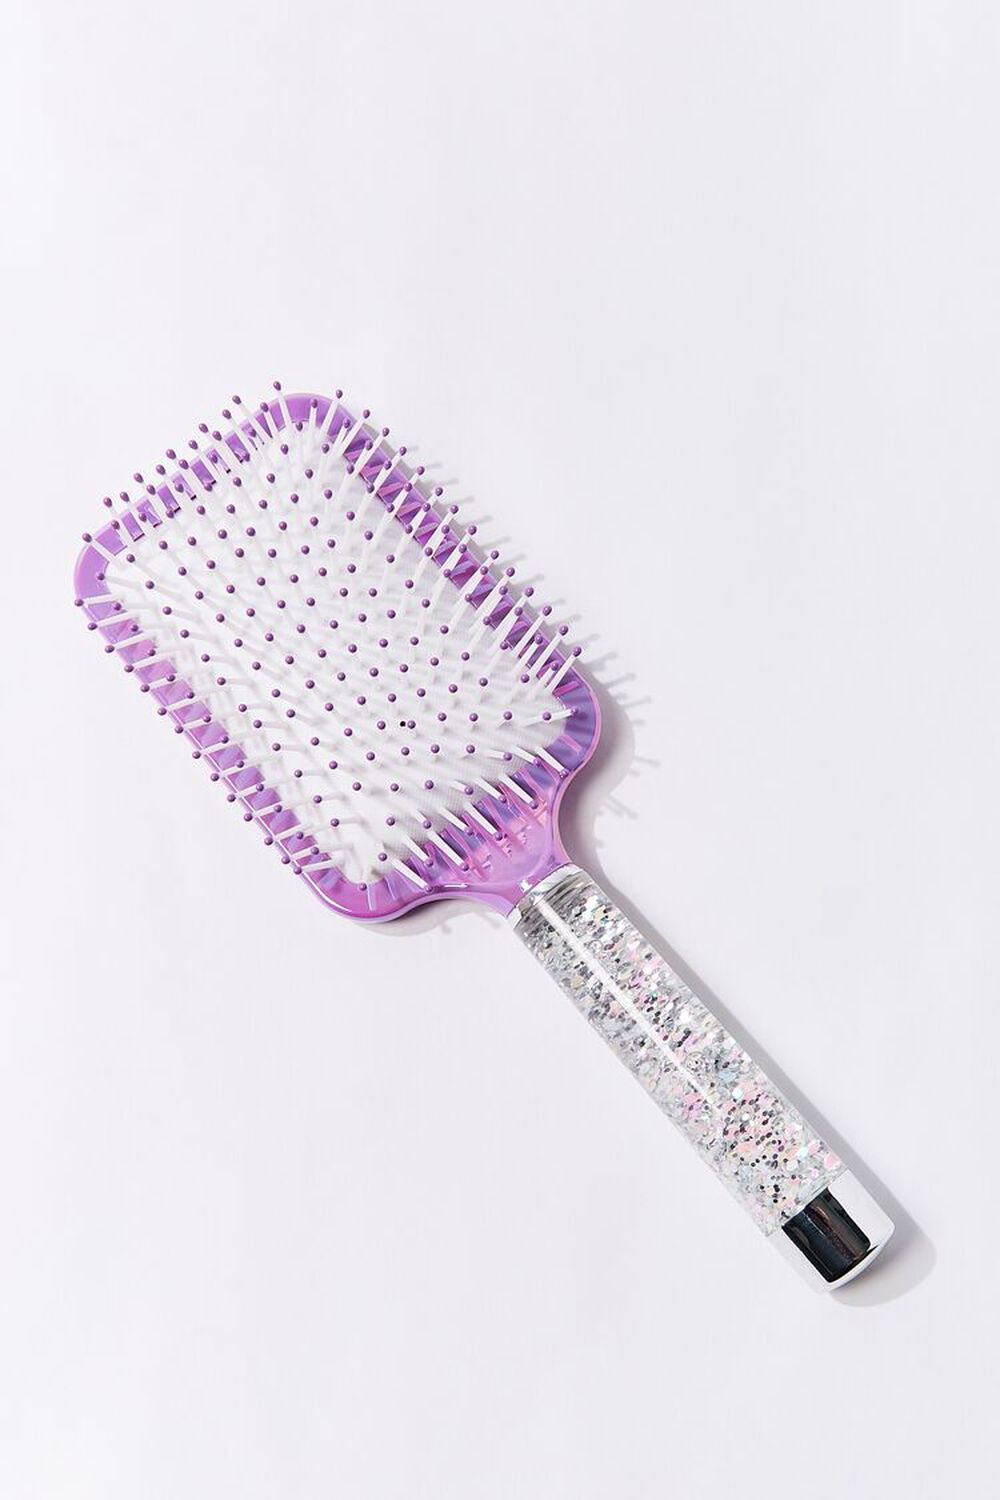 PURPLE/MULTI Glitter Square Paddle Hair Brush, image 1